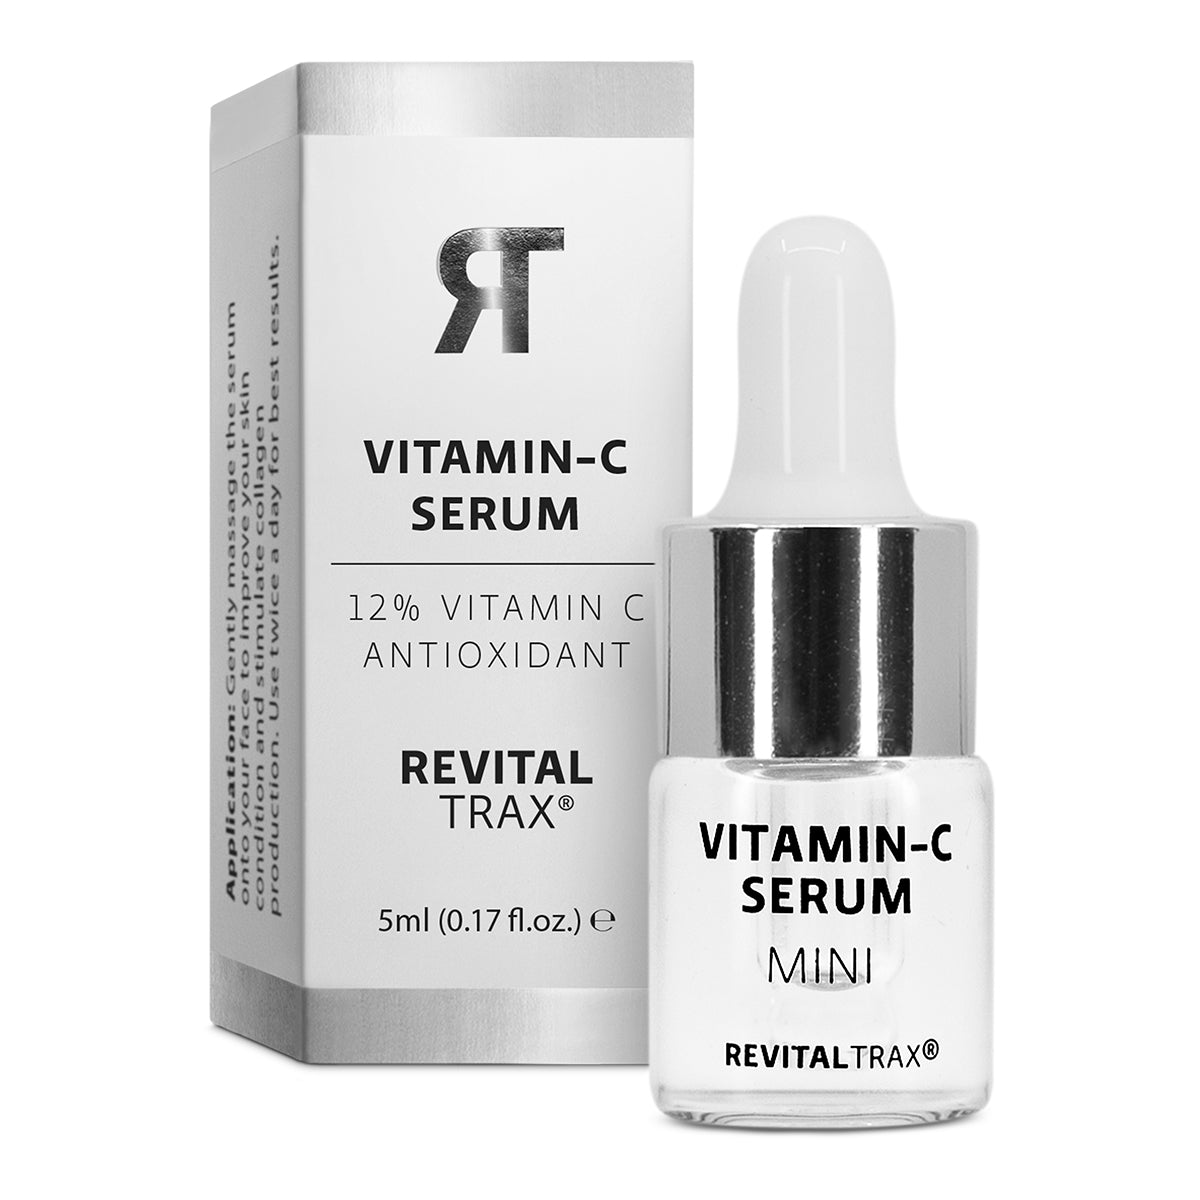 Mini - Vitamin-C Serum